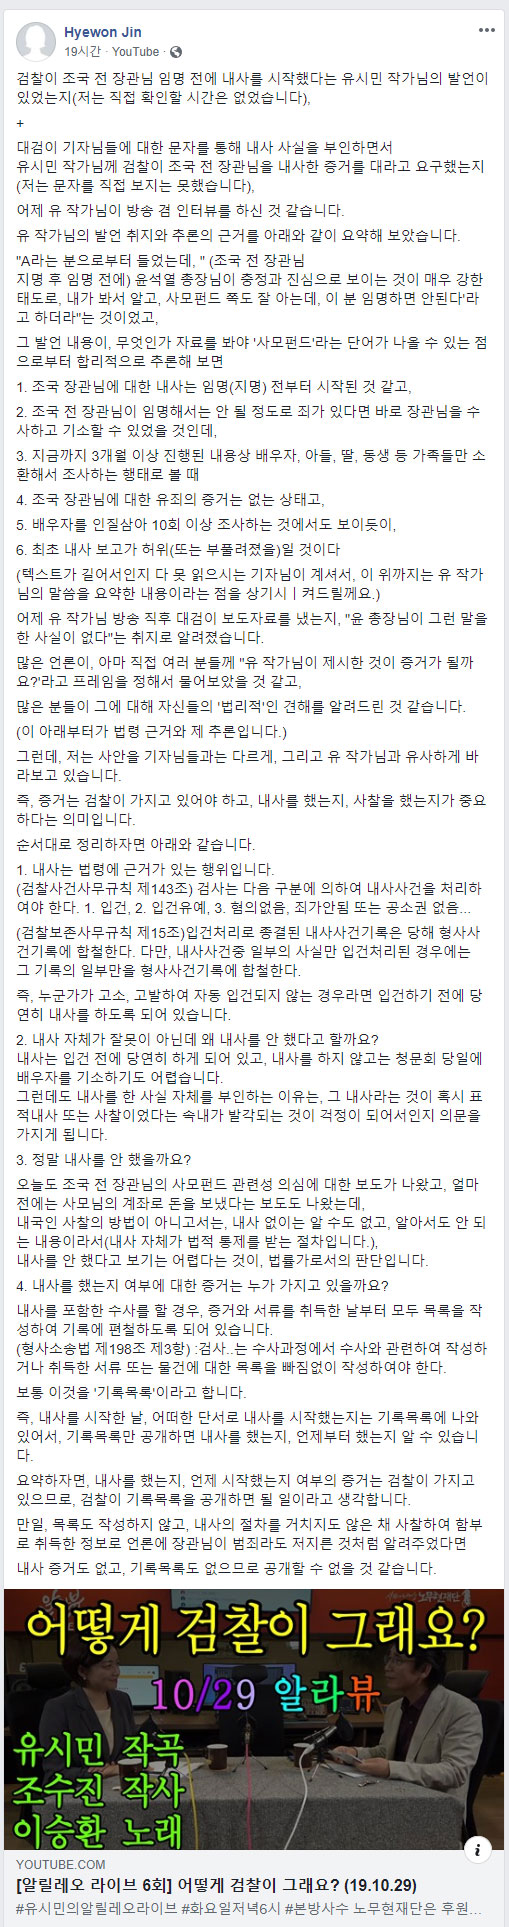 진혜원 검사의 페이스북 글 전문